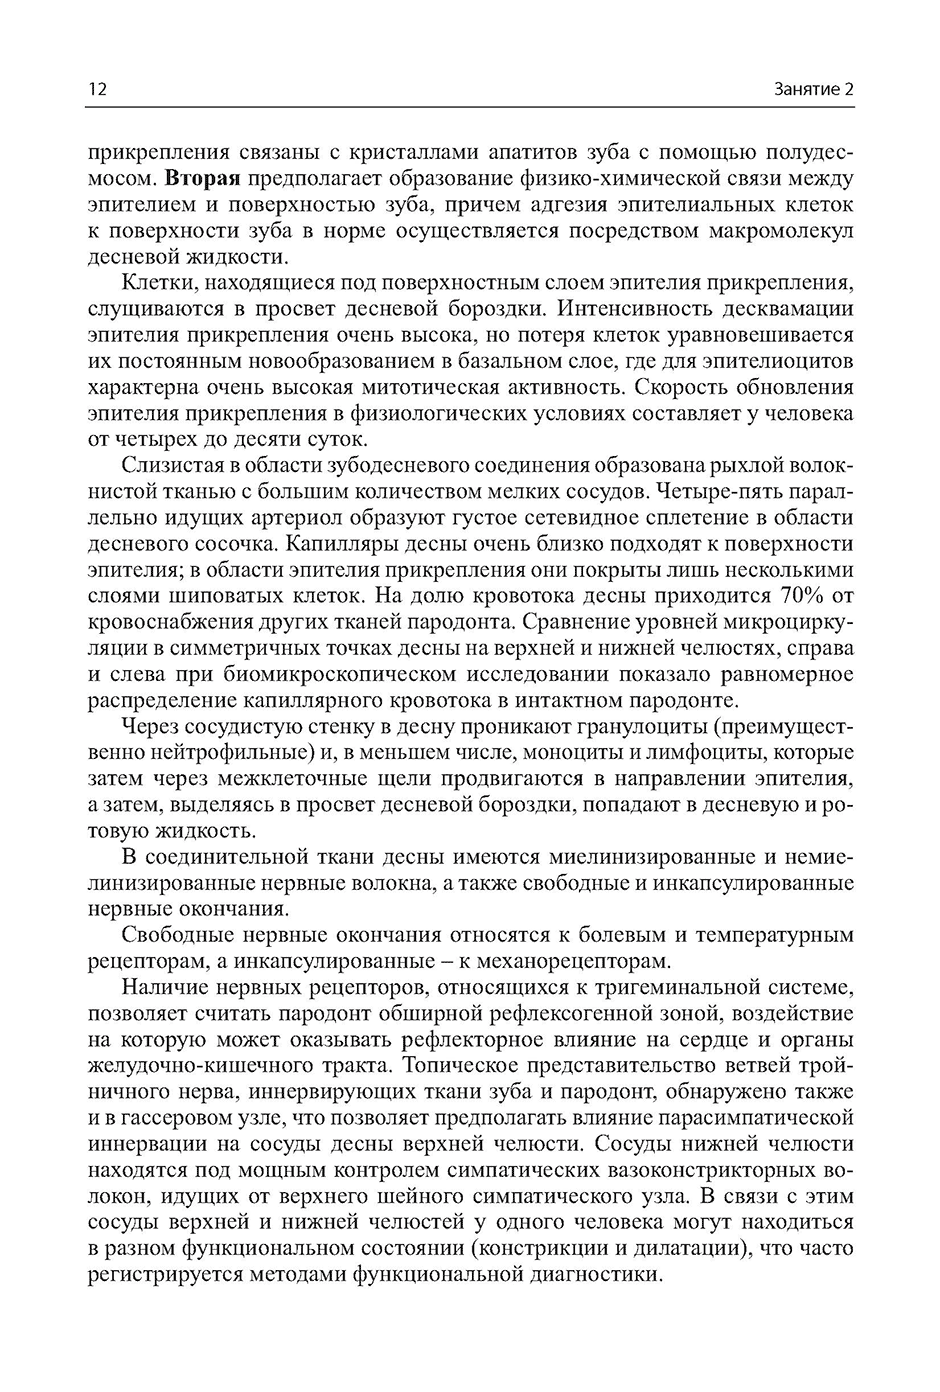 Содержание книги "Заболевания пародонта" - Макеева И. М.